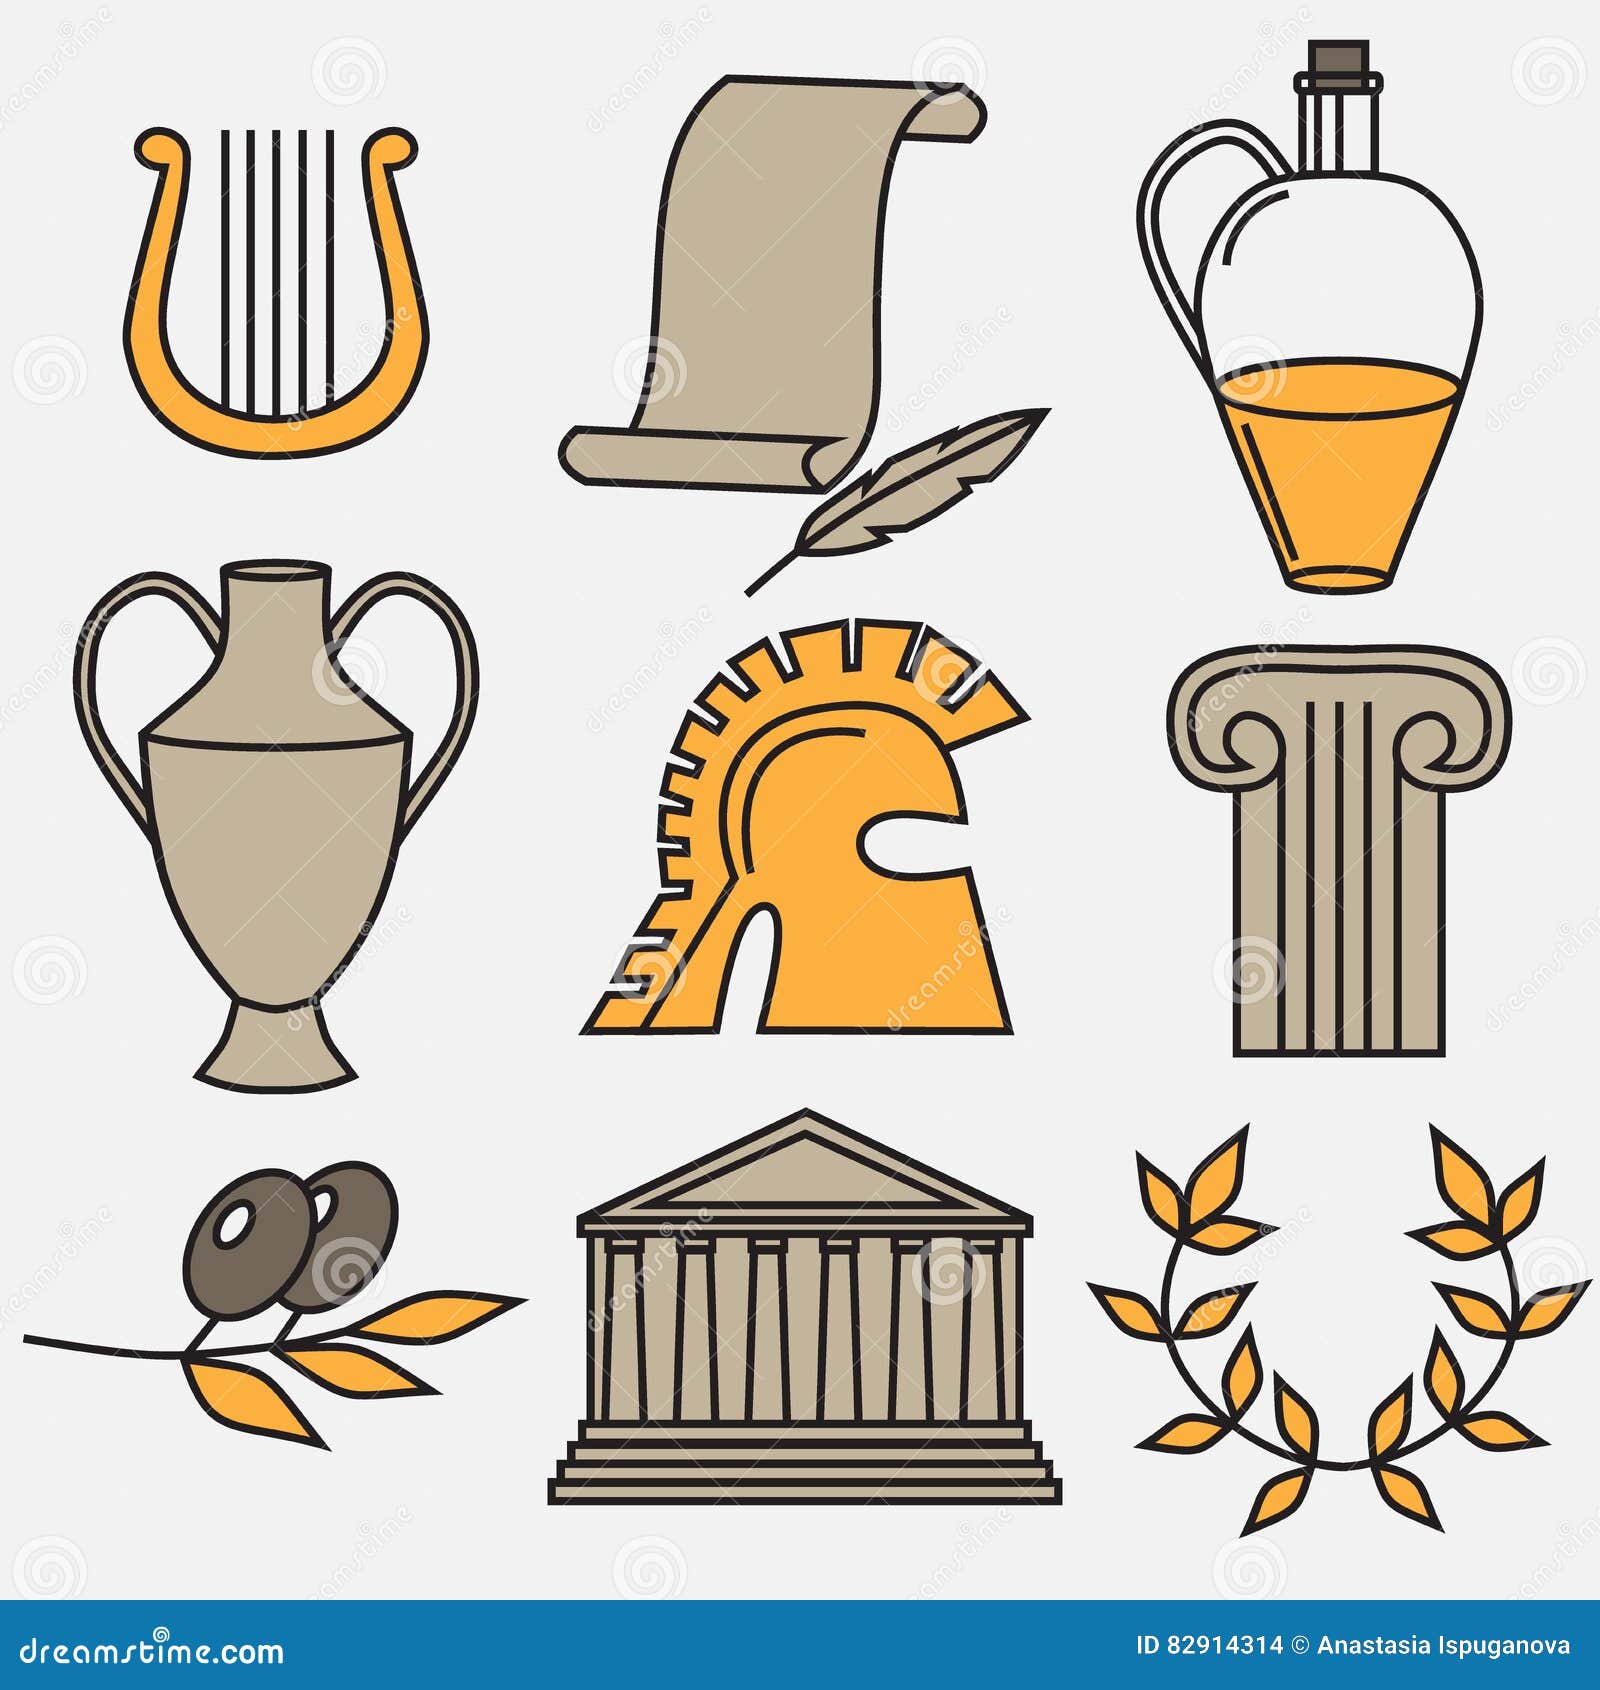 Античные знаки. Символы Греции. Знаки древней Греции. Символы античности. Неофициальные символы Греции.